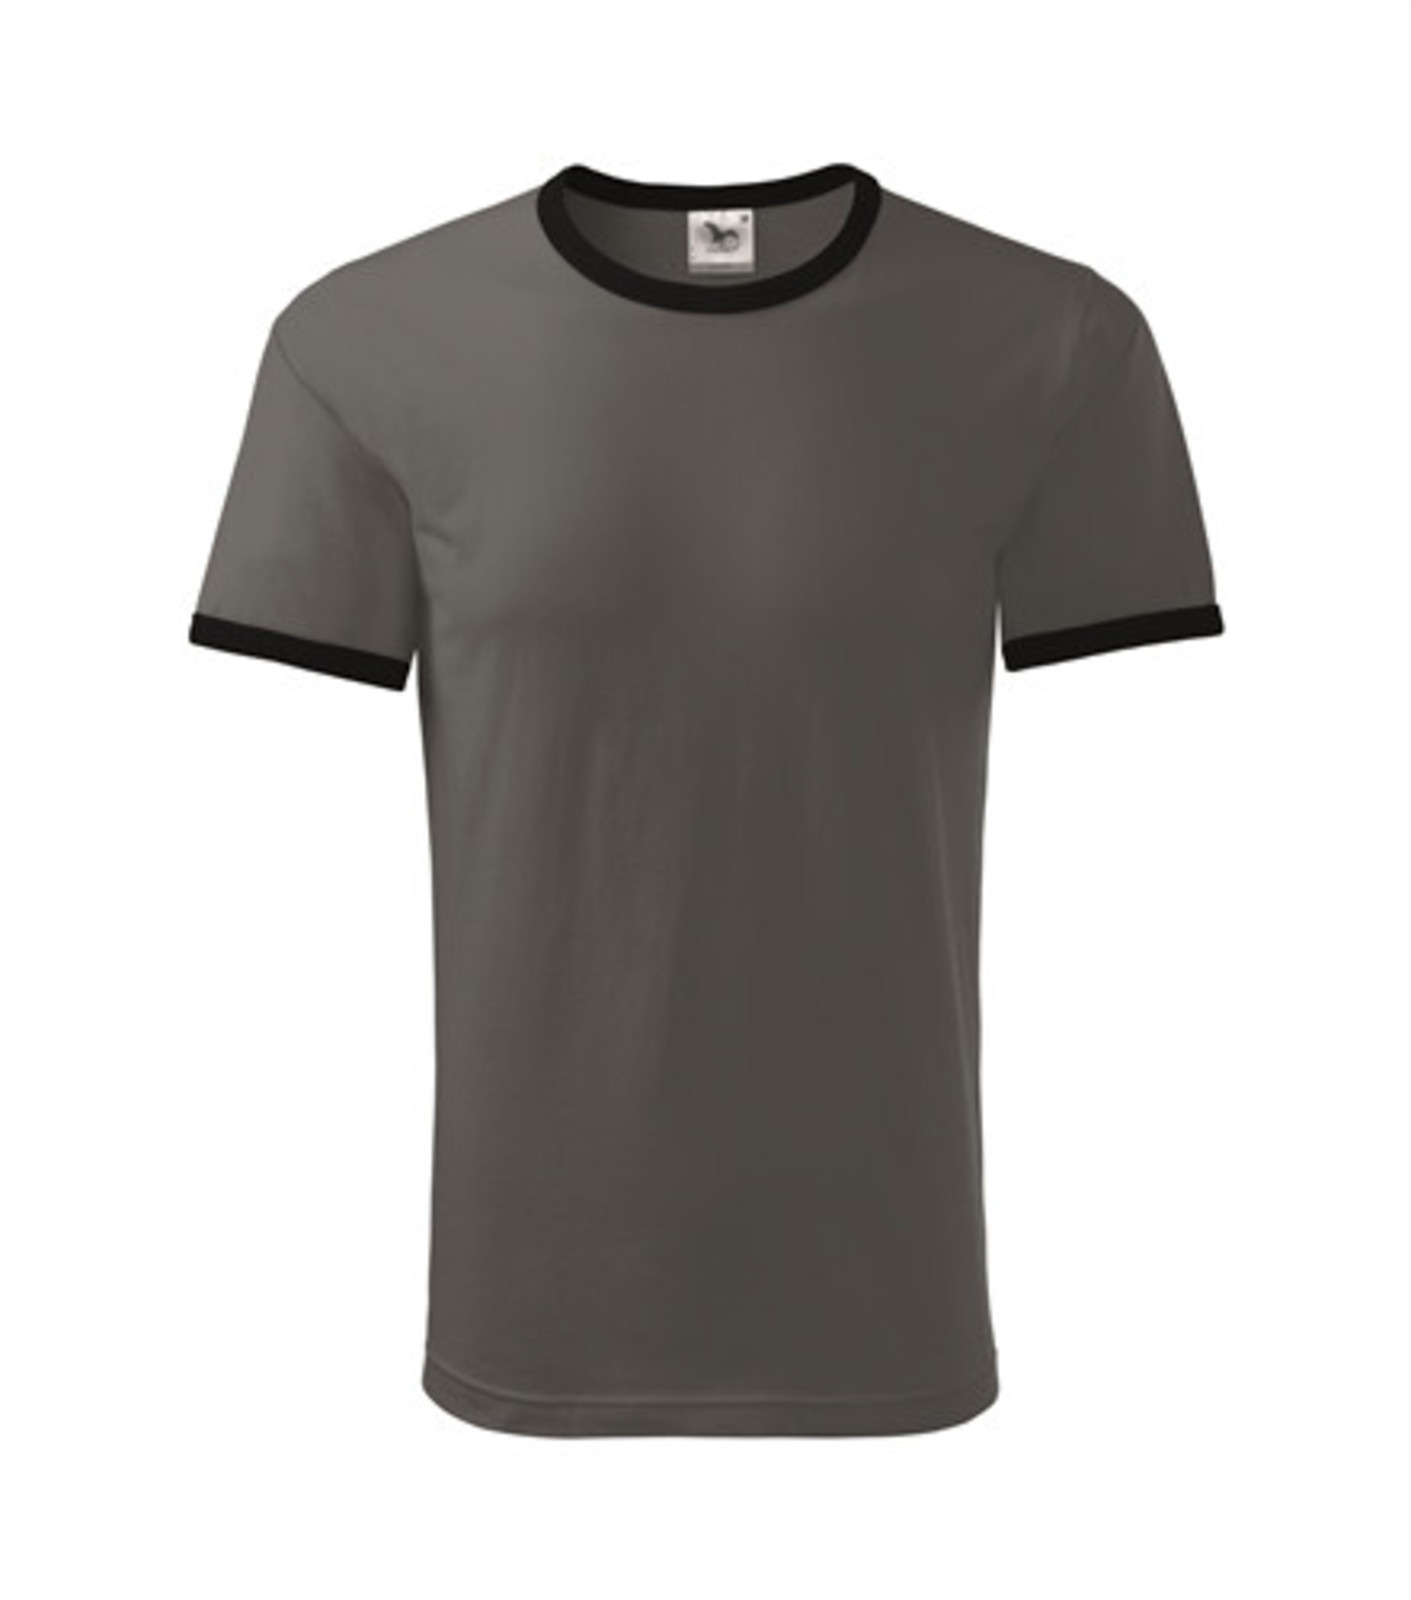 Unisex tričko Adler Infinity 131 - veľkosť: M, farba: bridlica/čierna